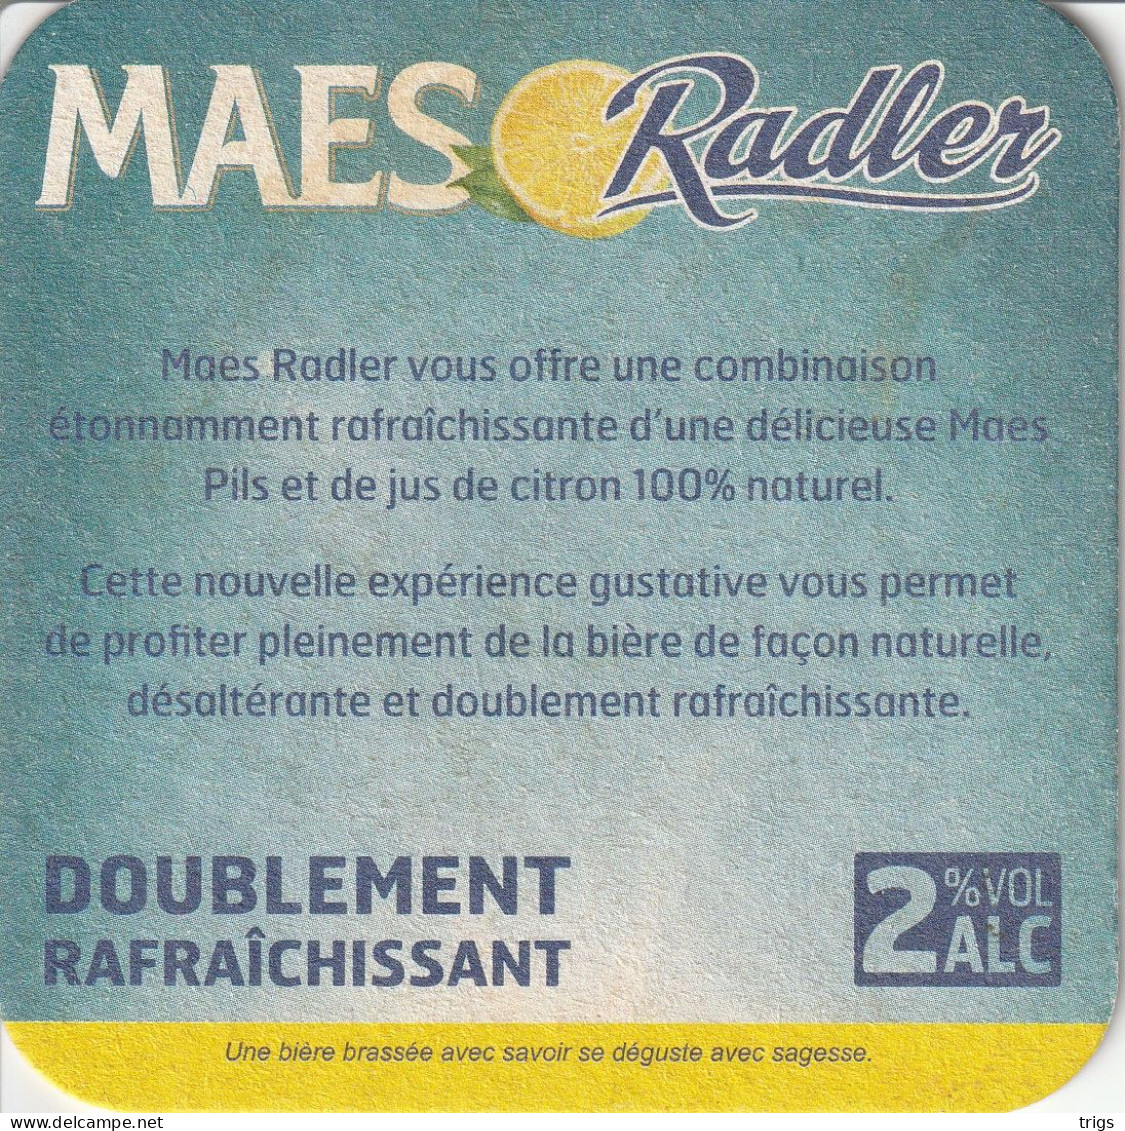 Maes Radler - Sous-bocks